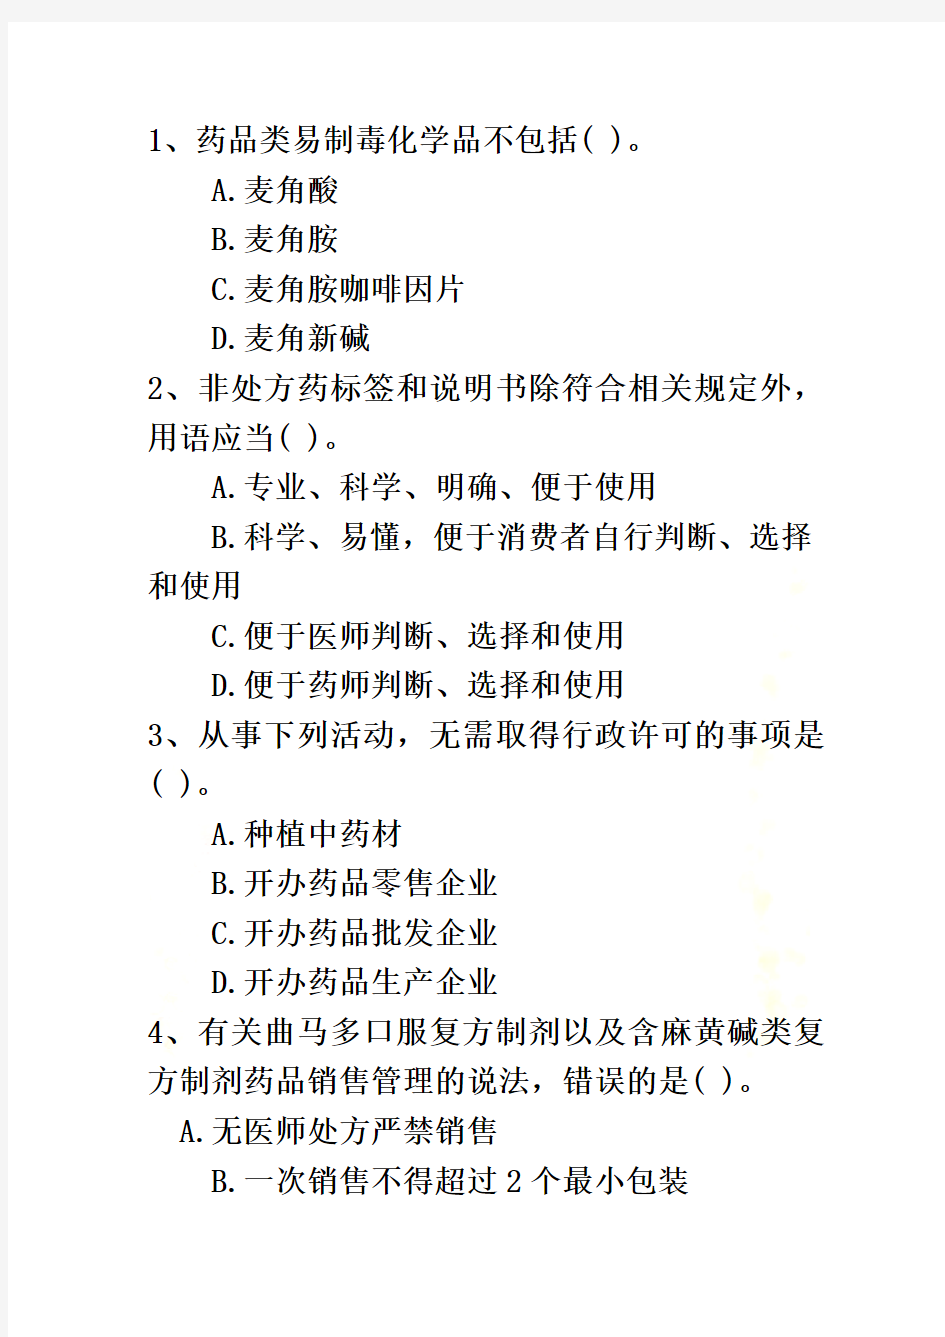 2015年湖南省药学专业知识一二最新考试试题库(完整版)